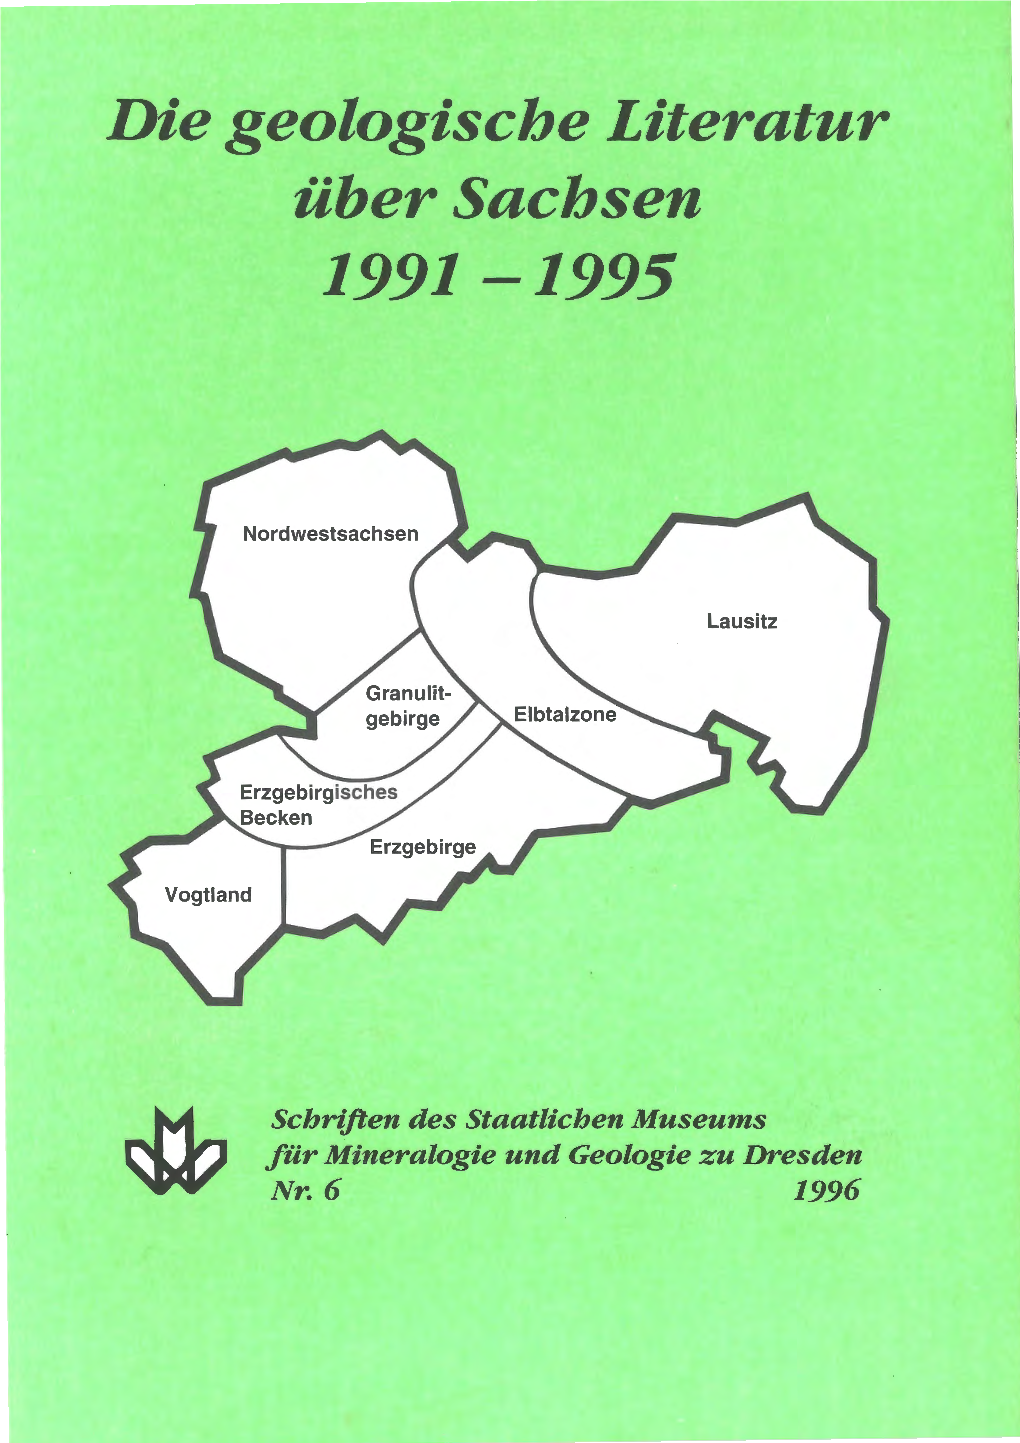 Me Geologische Literatur Über Sachsen 1991-1995